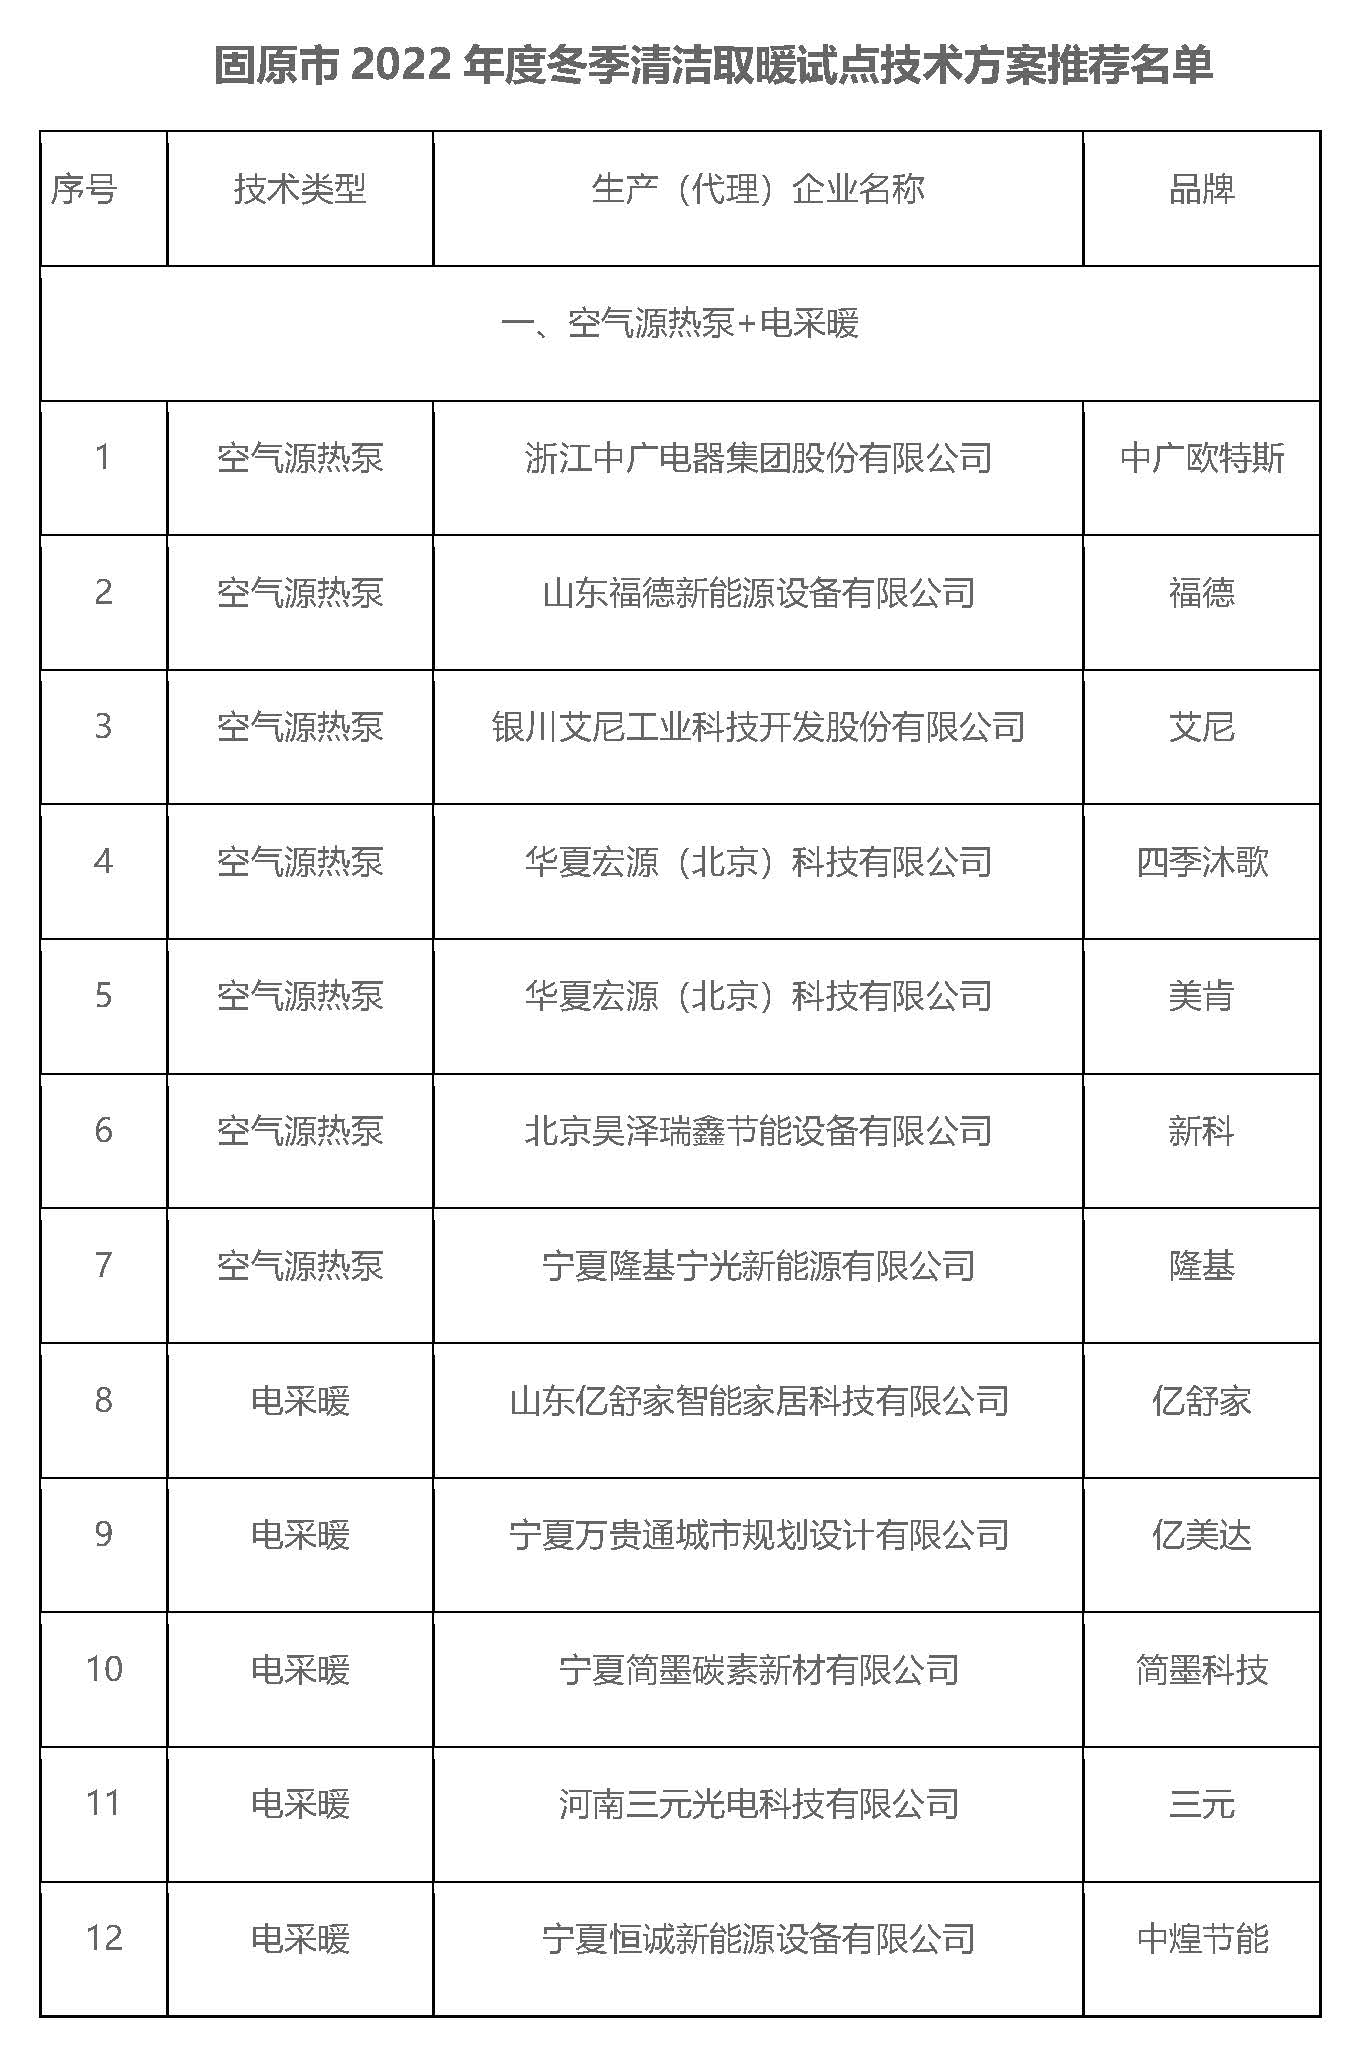 宁夏固原市2022年度冬季清洁取暖试点技术方案推荐名单公示2